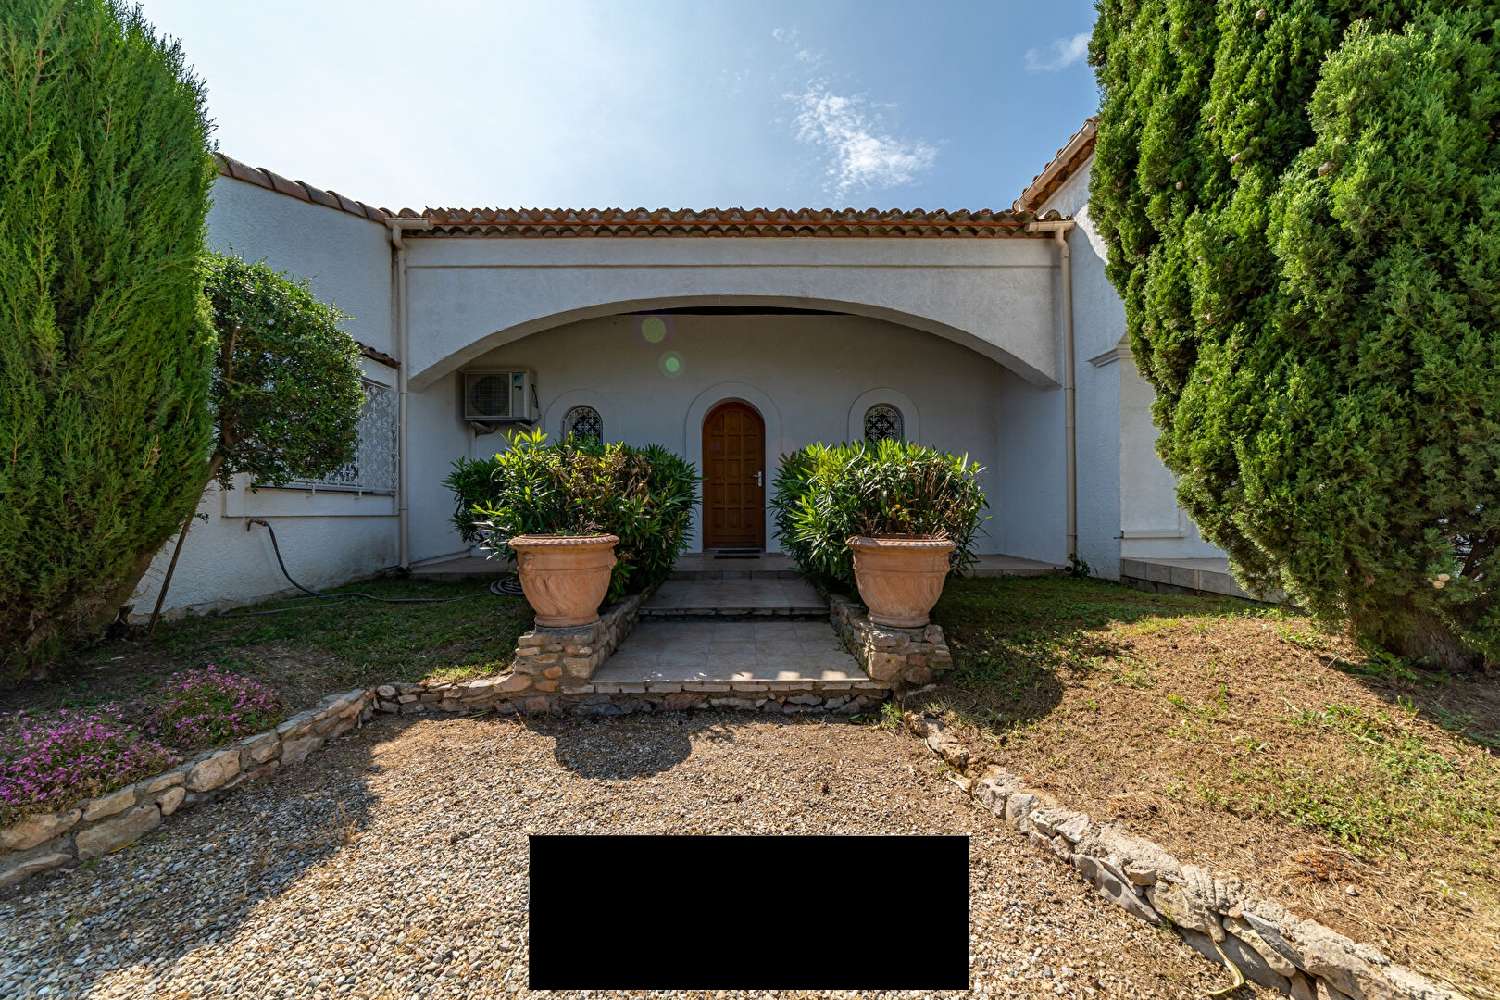  à vendre villa Balaruc-le-Vieux Hérault 2